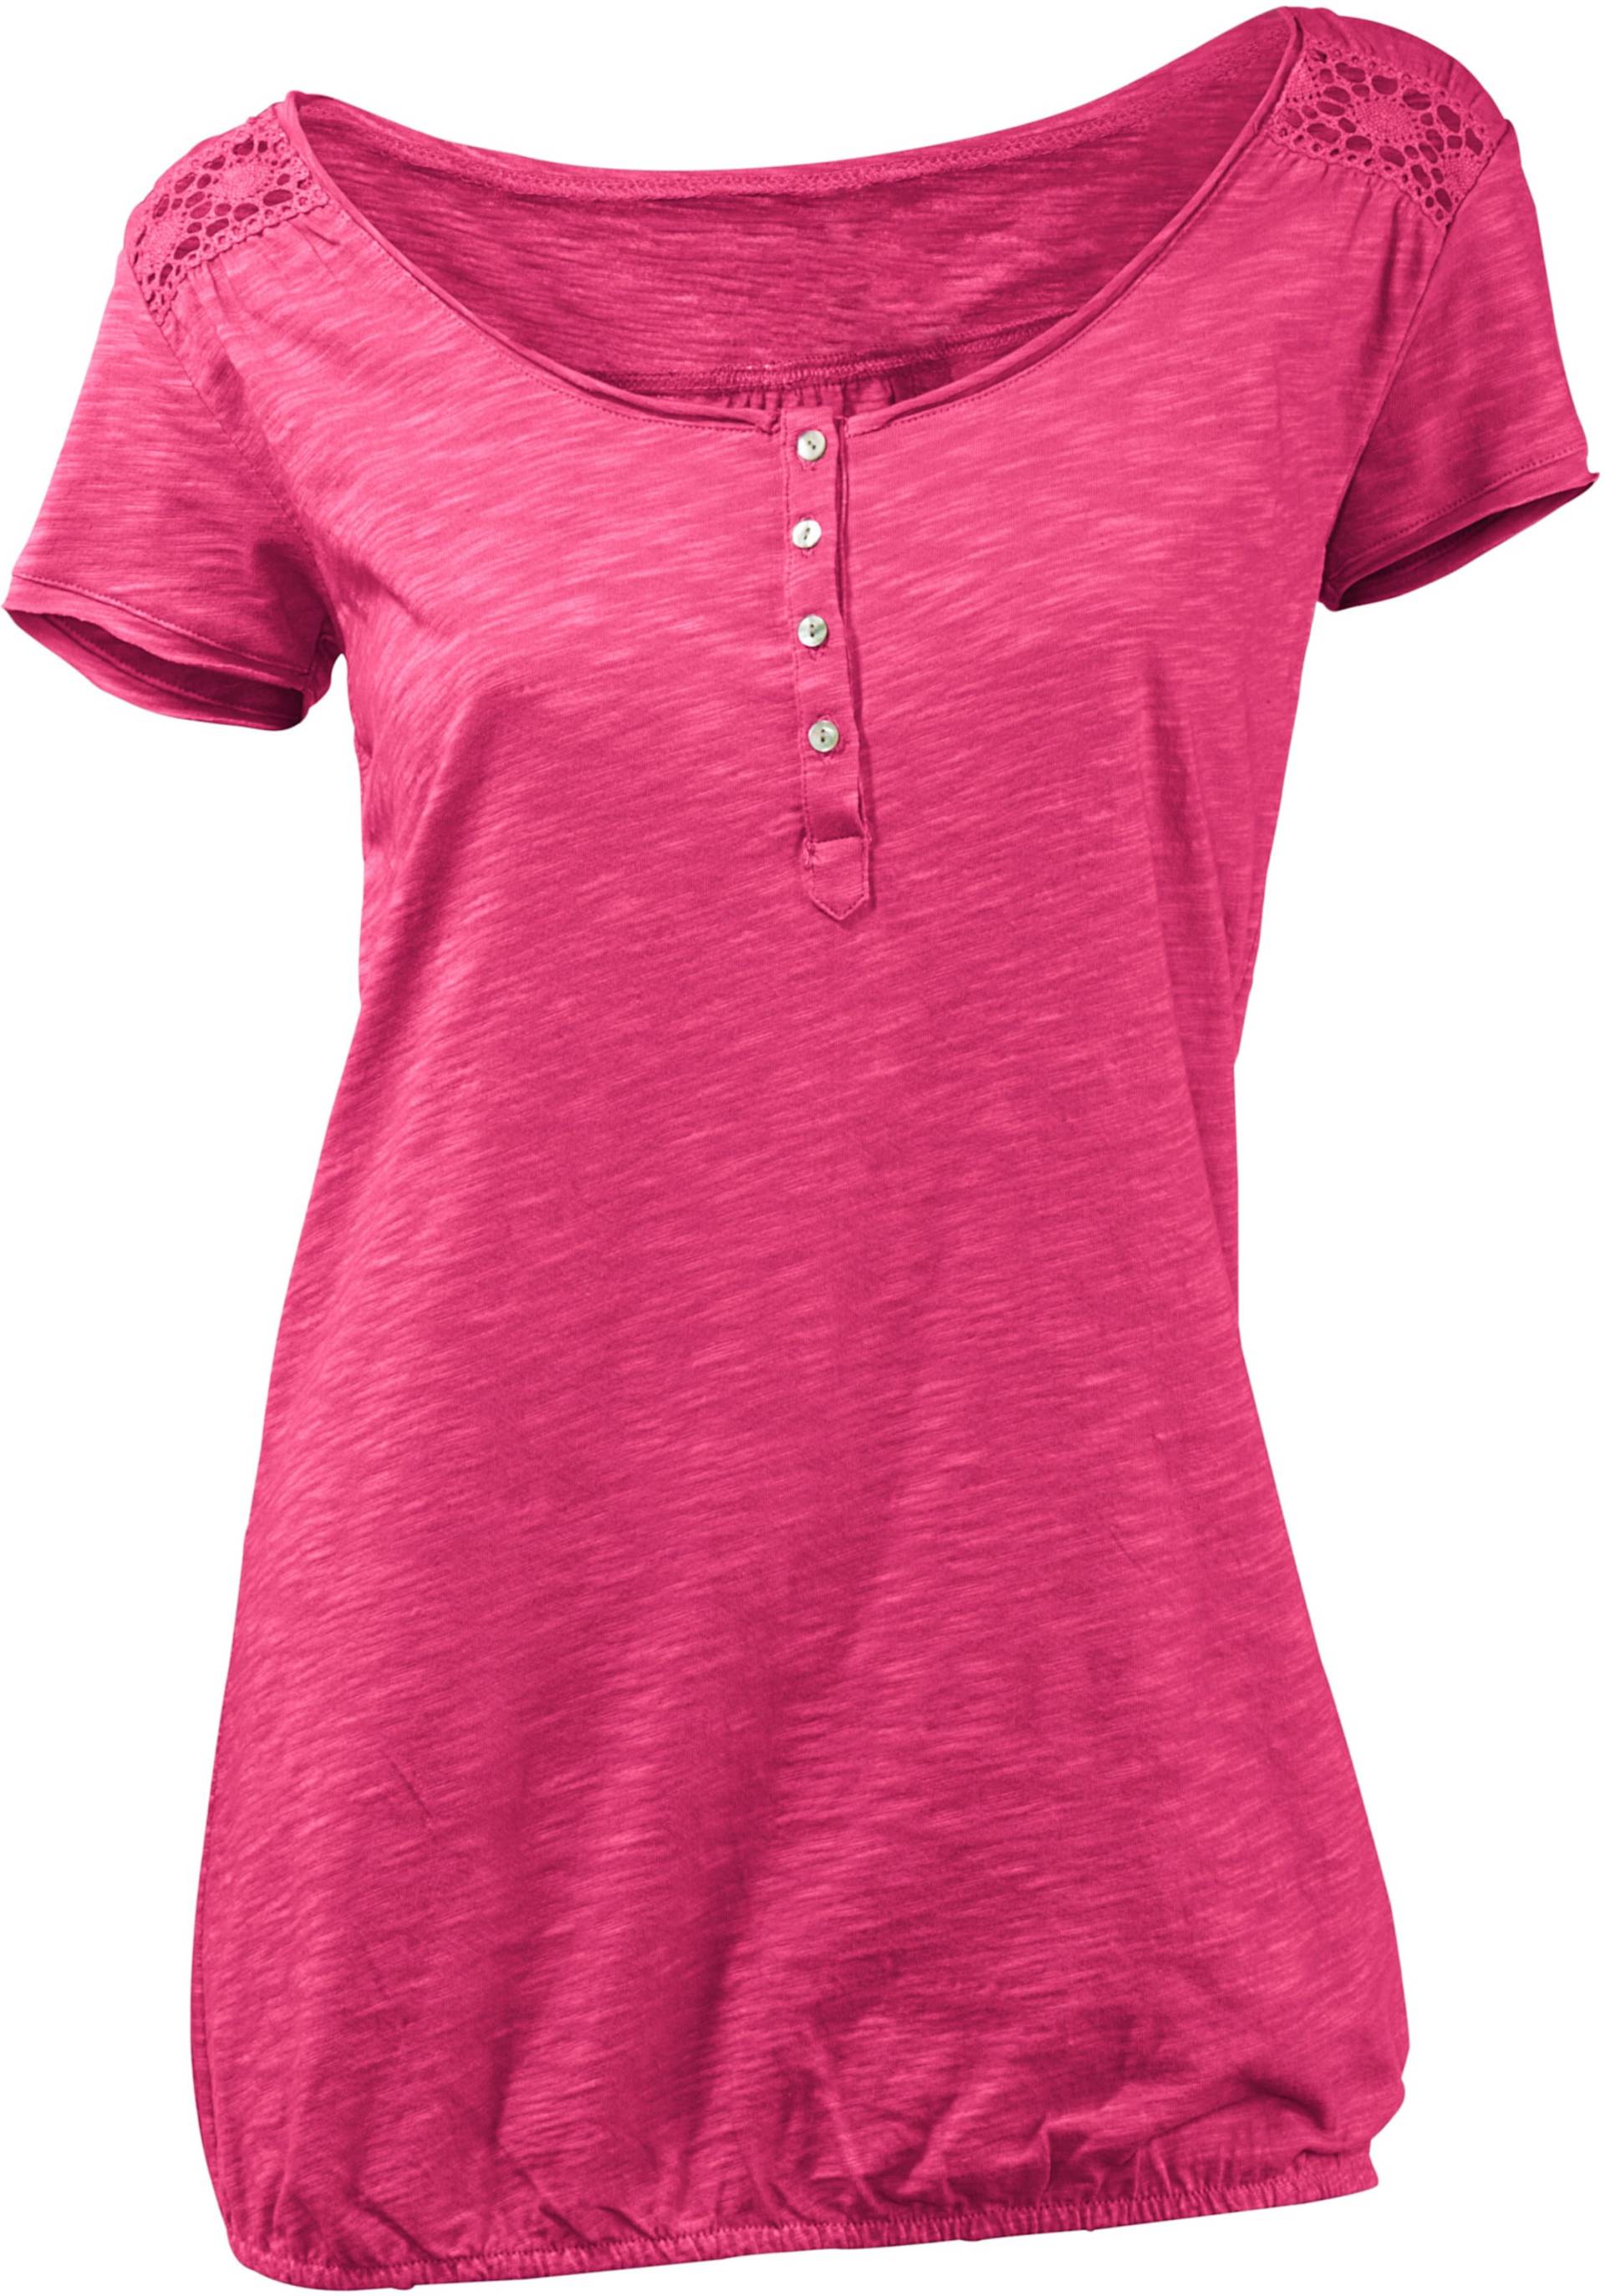 Rundhals-Shirt in pink von heine